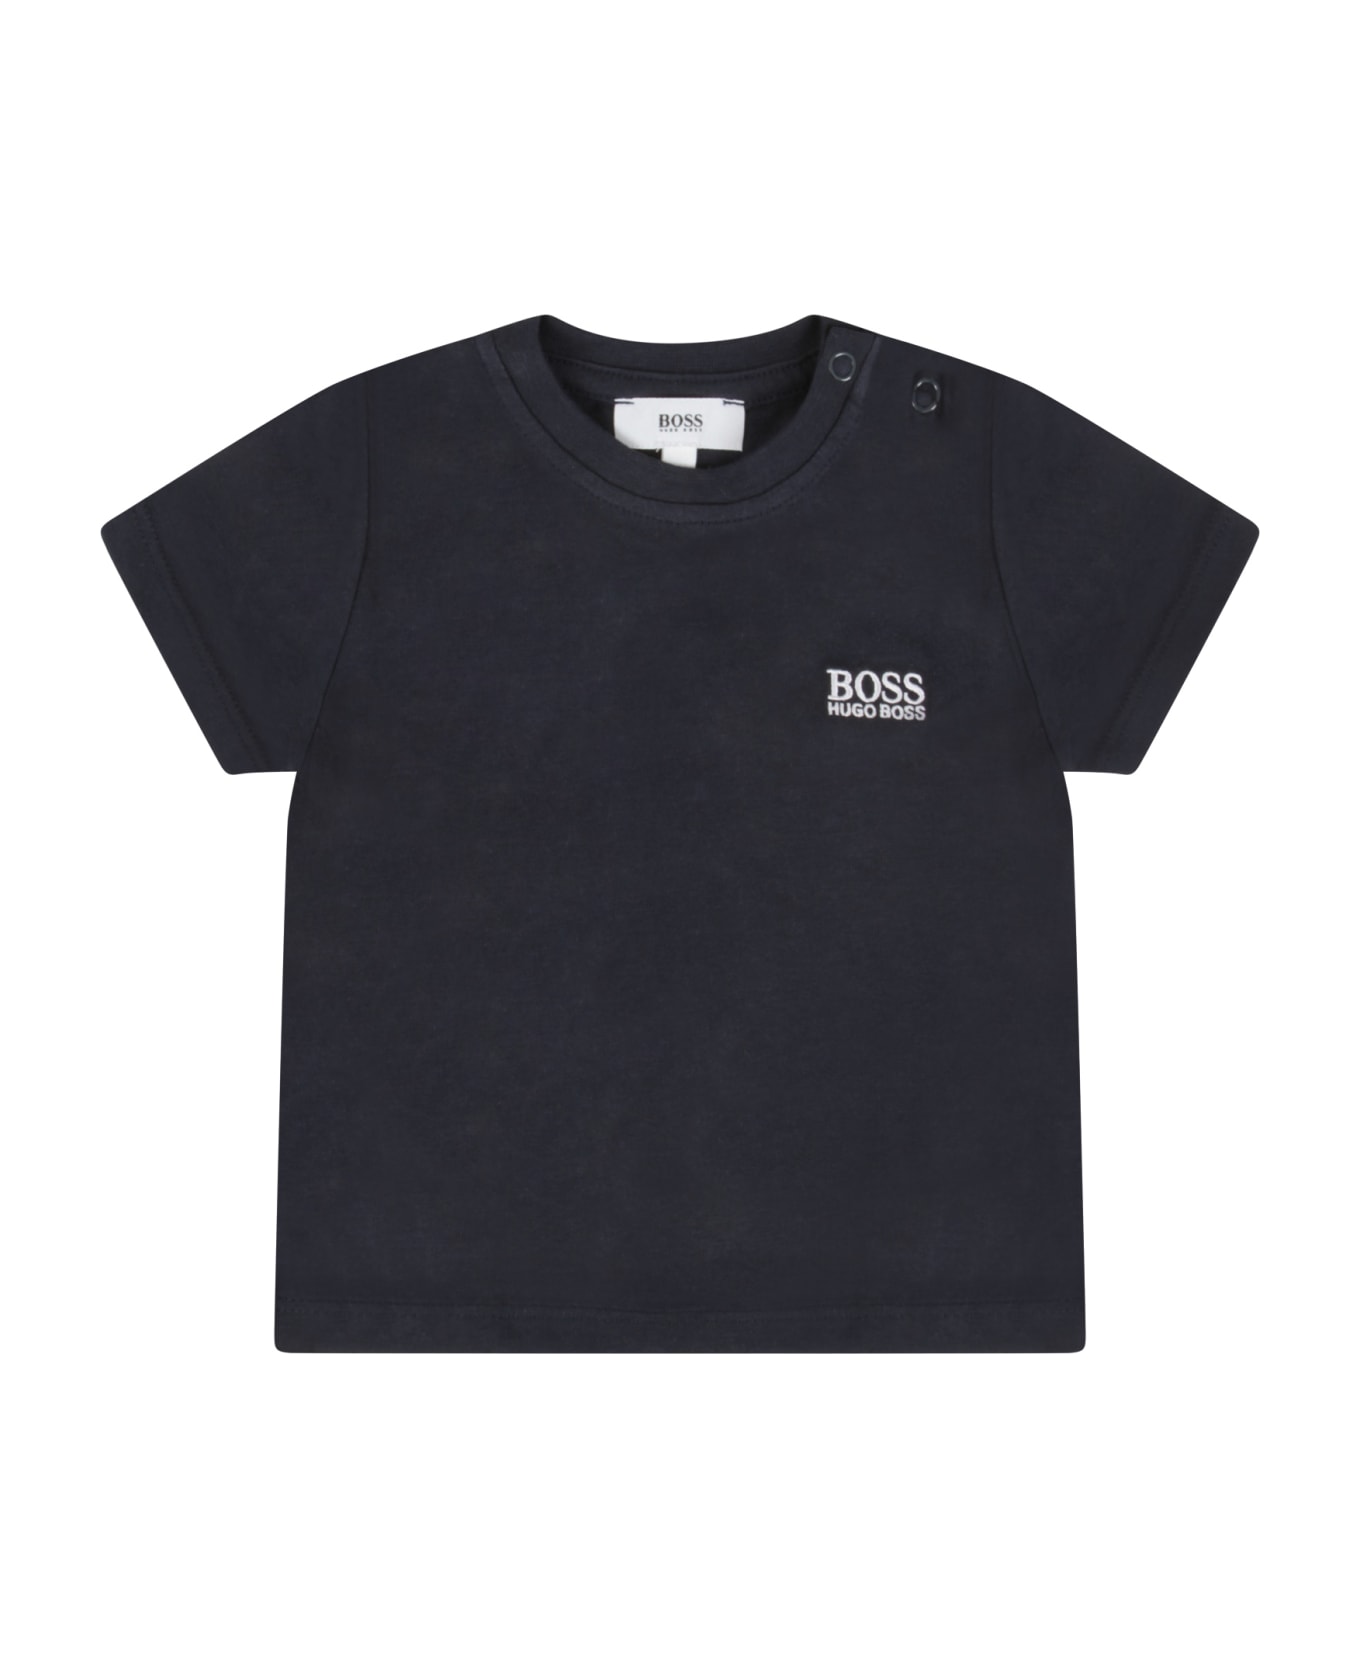 Hugo Boss Blue T-shirt For Baby Boy With White Stradivarius - Blue